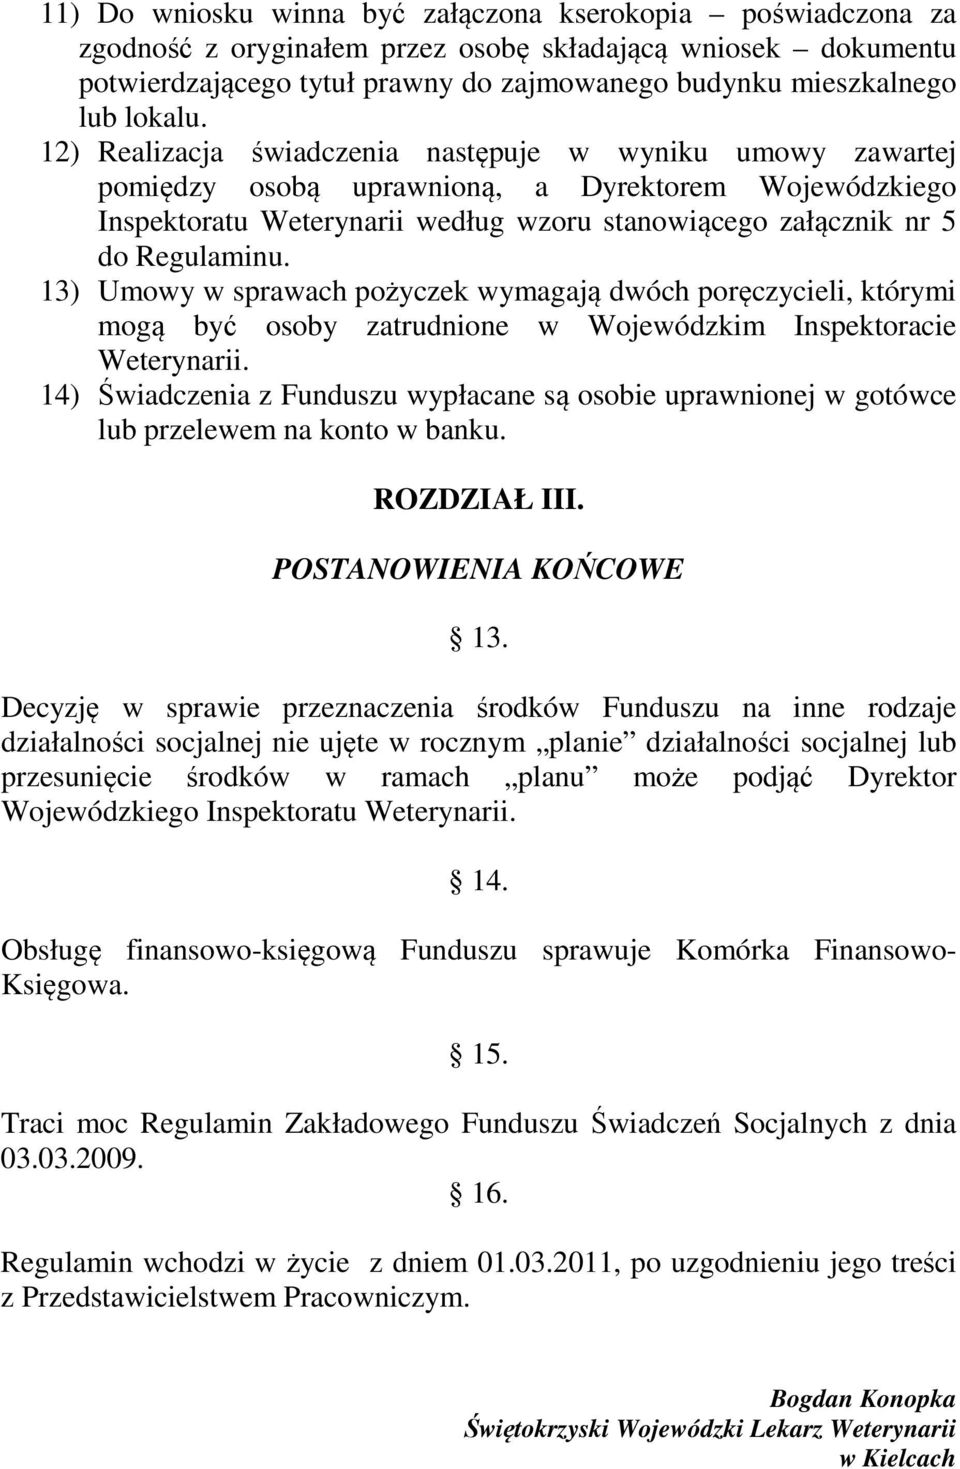 12) Realizacja świadczenia następuje w wyniku umowy zawartej pomiędzy osobą uprawnioną, a Dyrektorem Wojewódzkiego Inspektoratu Weterynarii według wzoru stanowiącego załącznik nr 5 do Regulaminu.